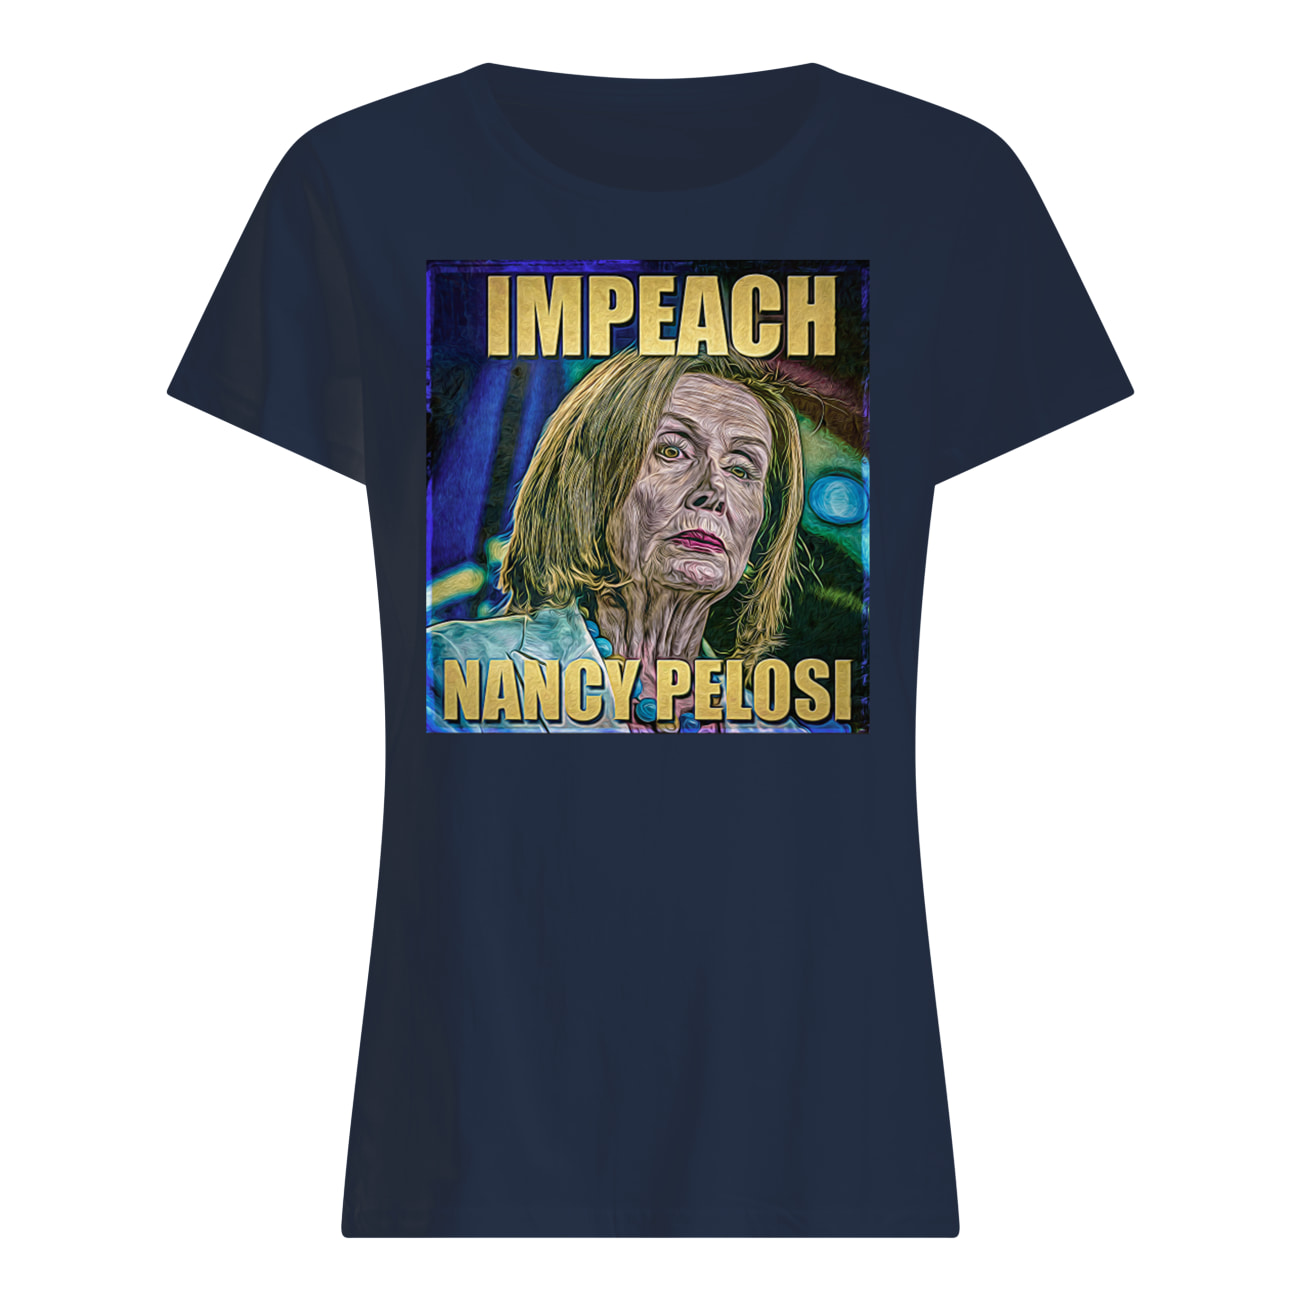 Trump impeach nancy pelosi womens shirt